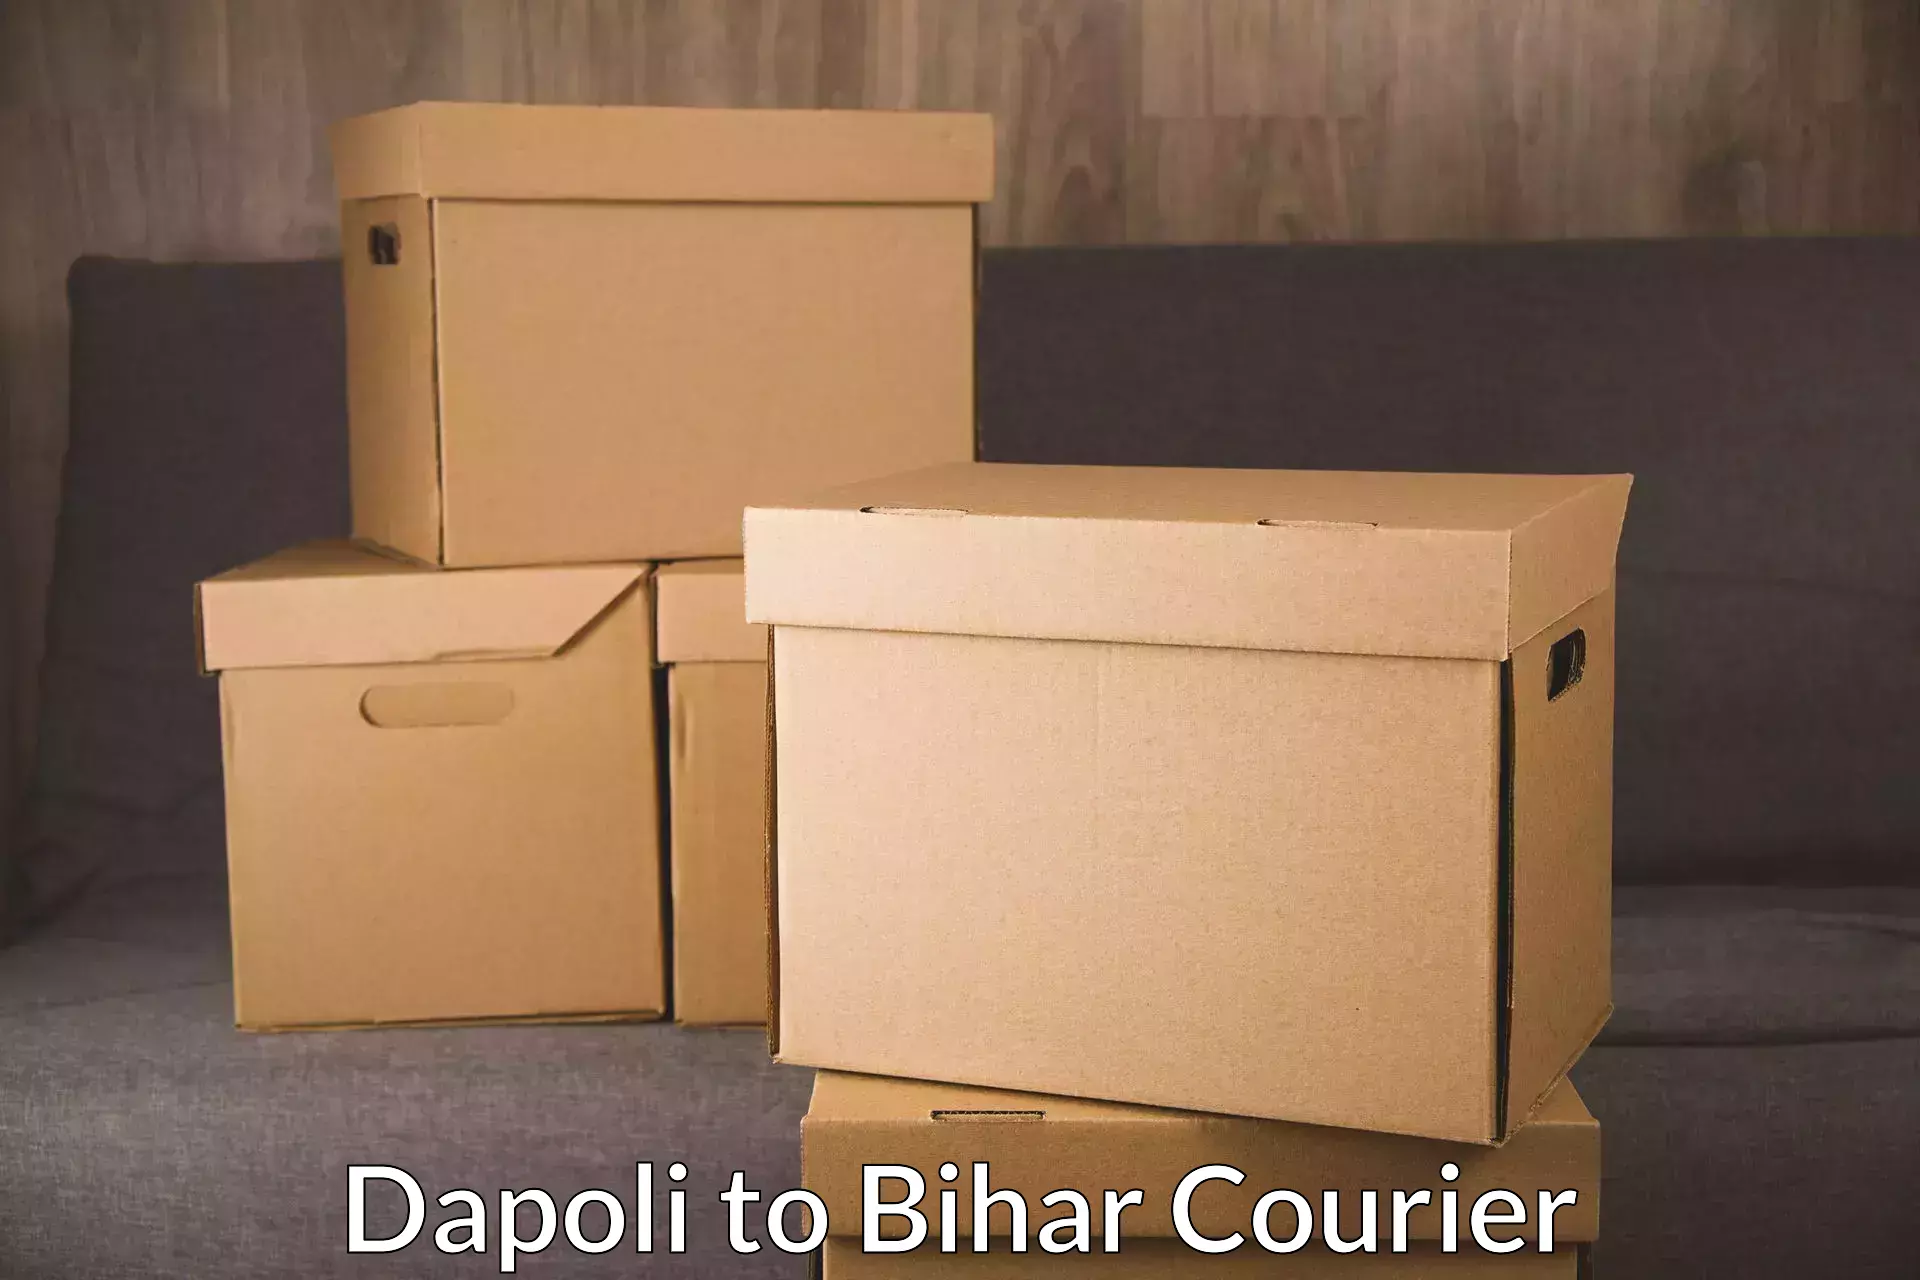 Courier service efficiency in Dapoli to Kishunganj